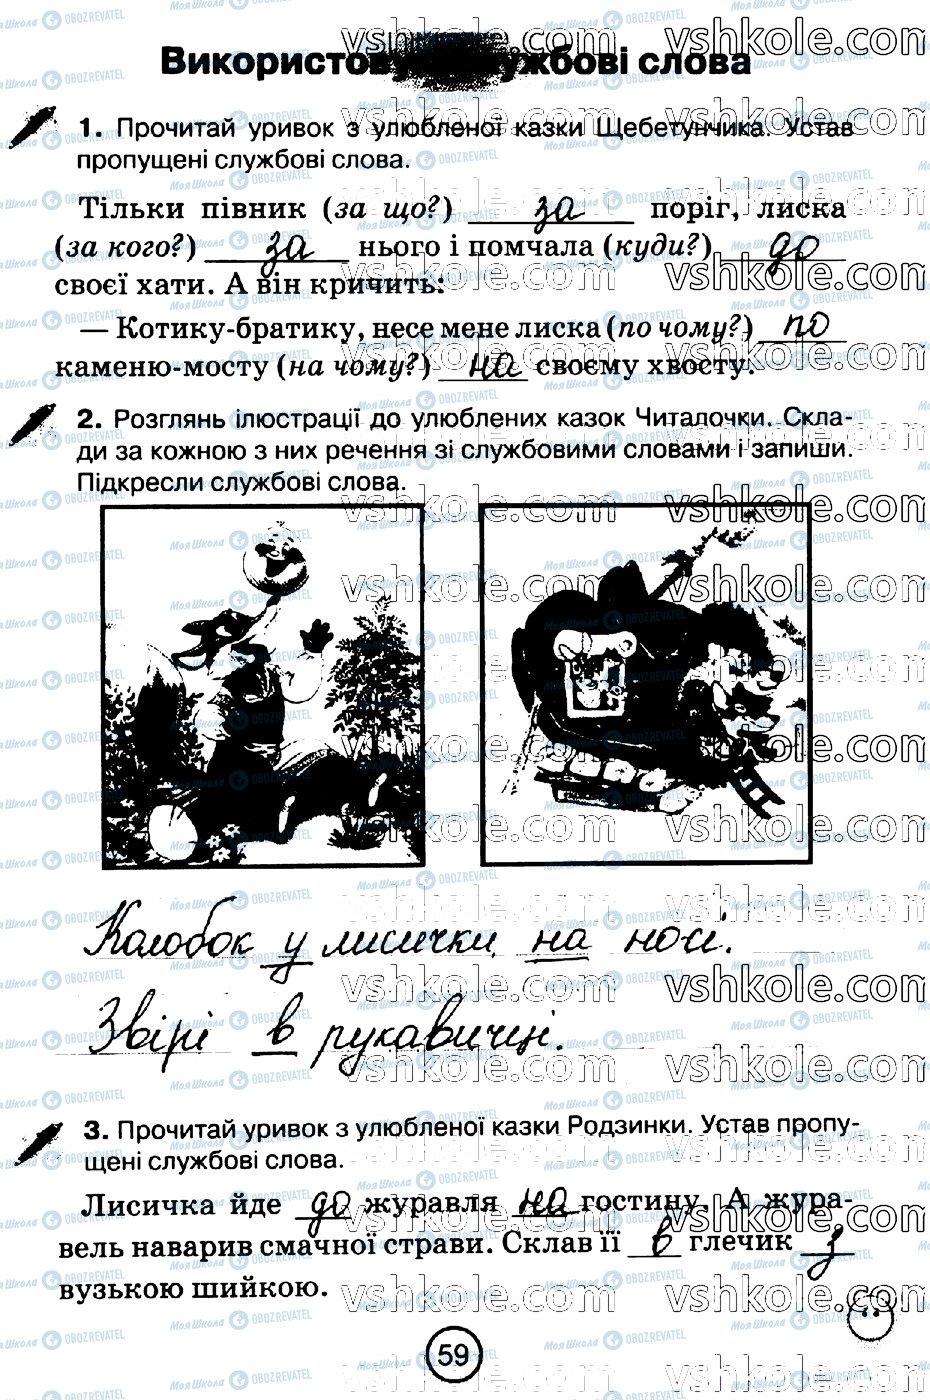 ГДЗ Укр мова 2 класс страница стр59